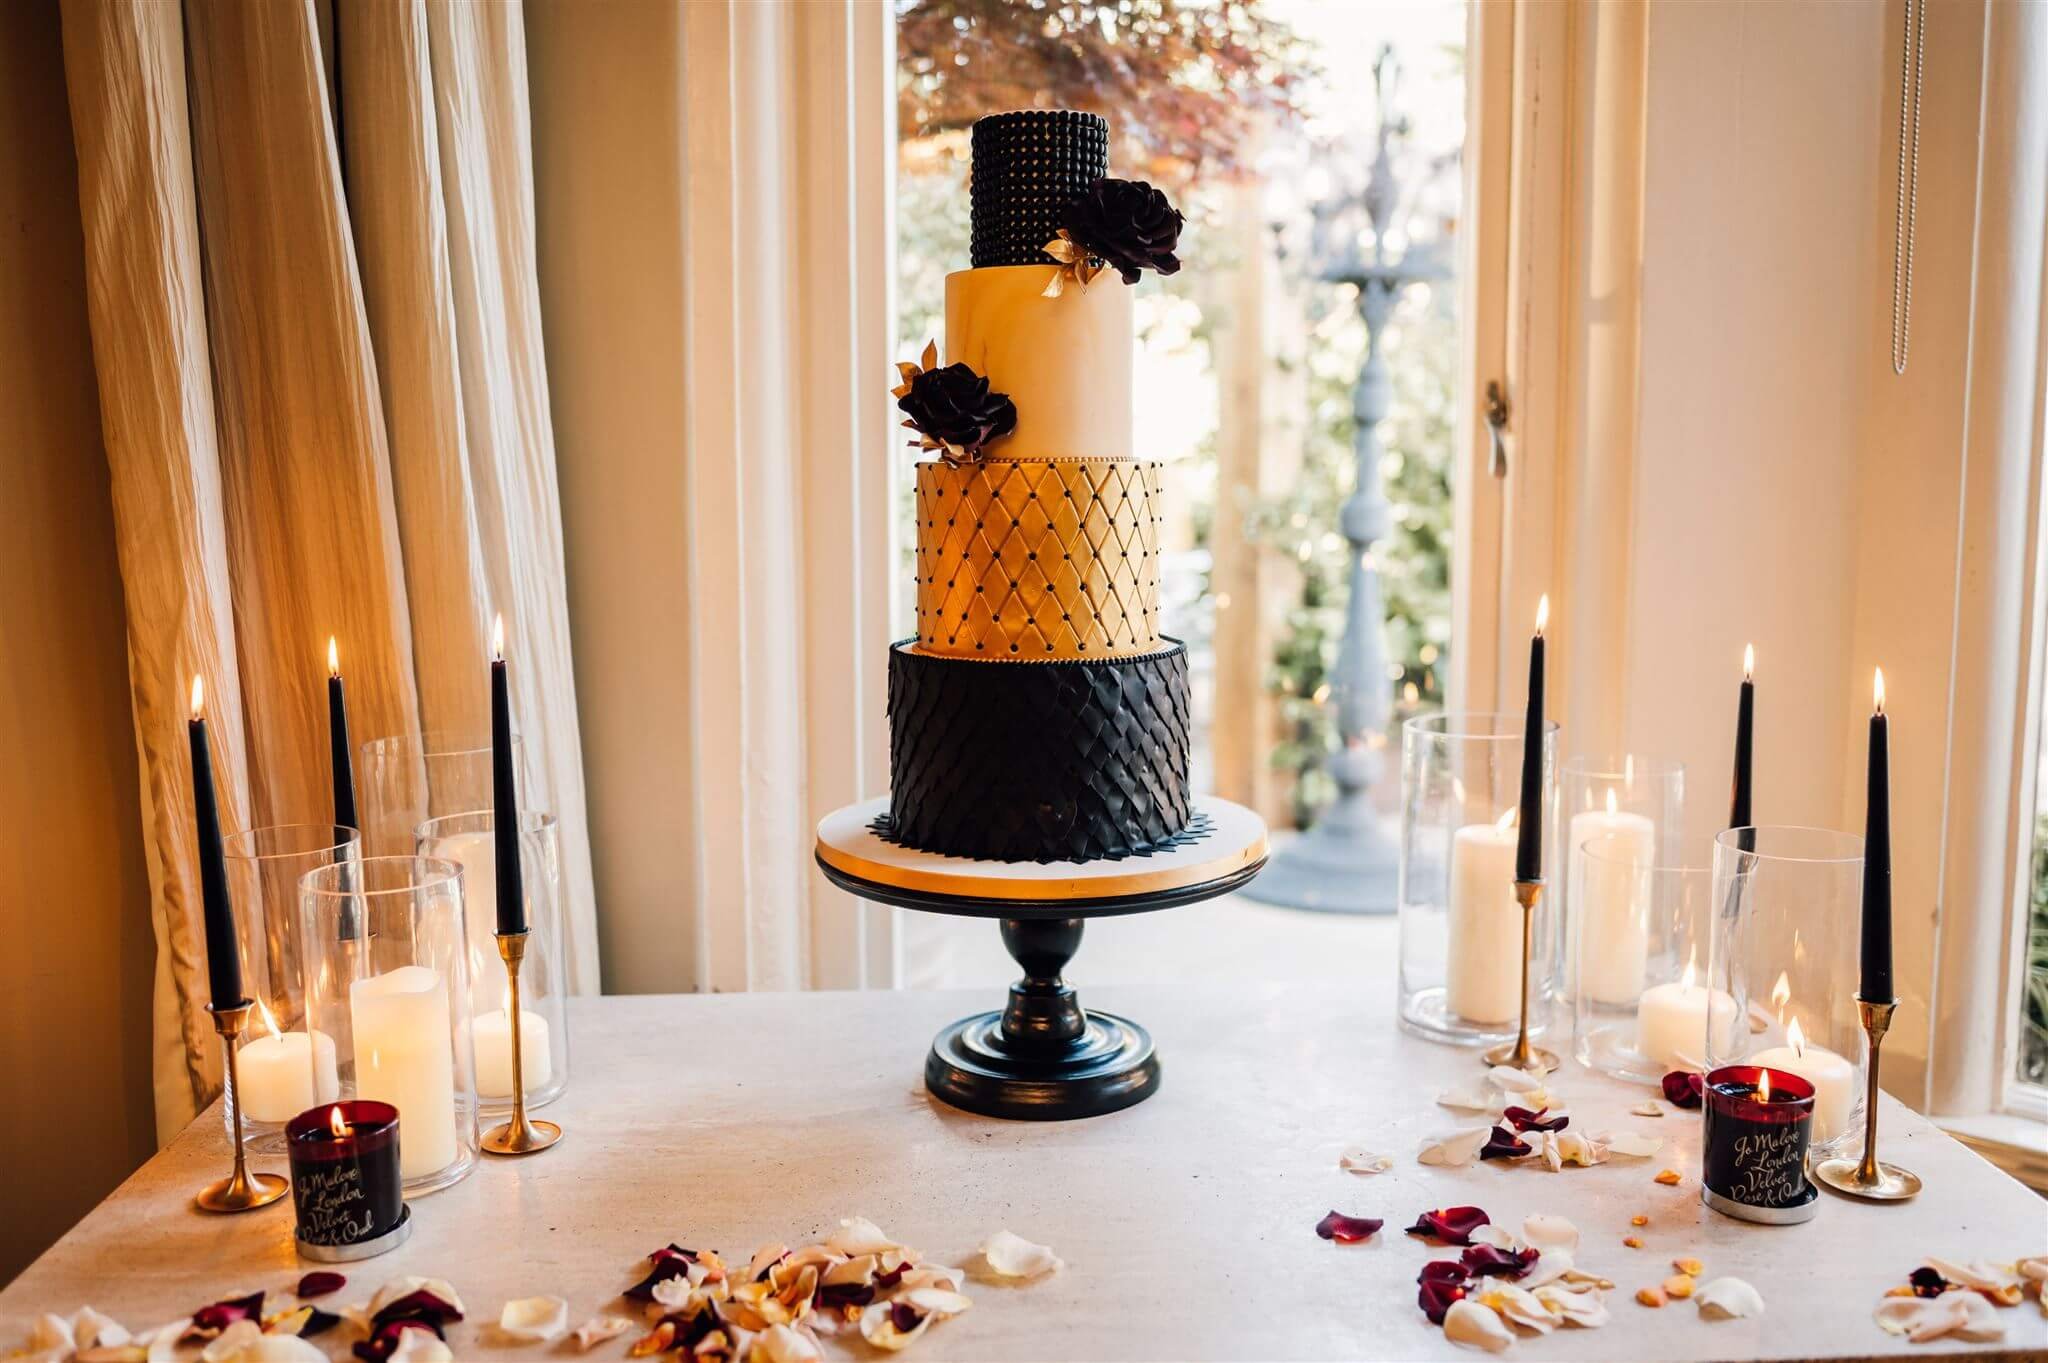 Lisa-and-Mark-wedding-cake-table.jpg